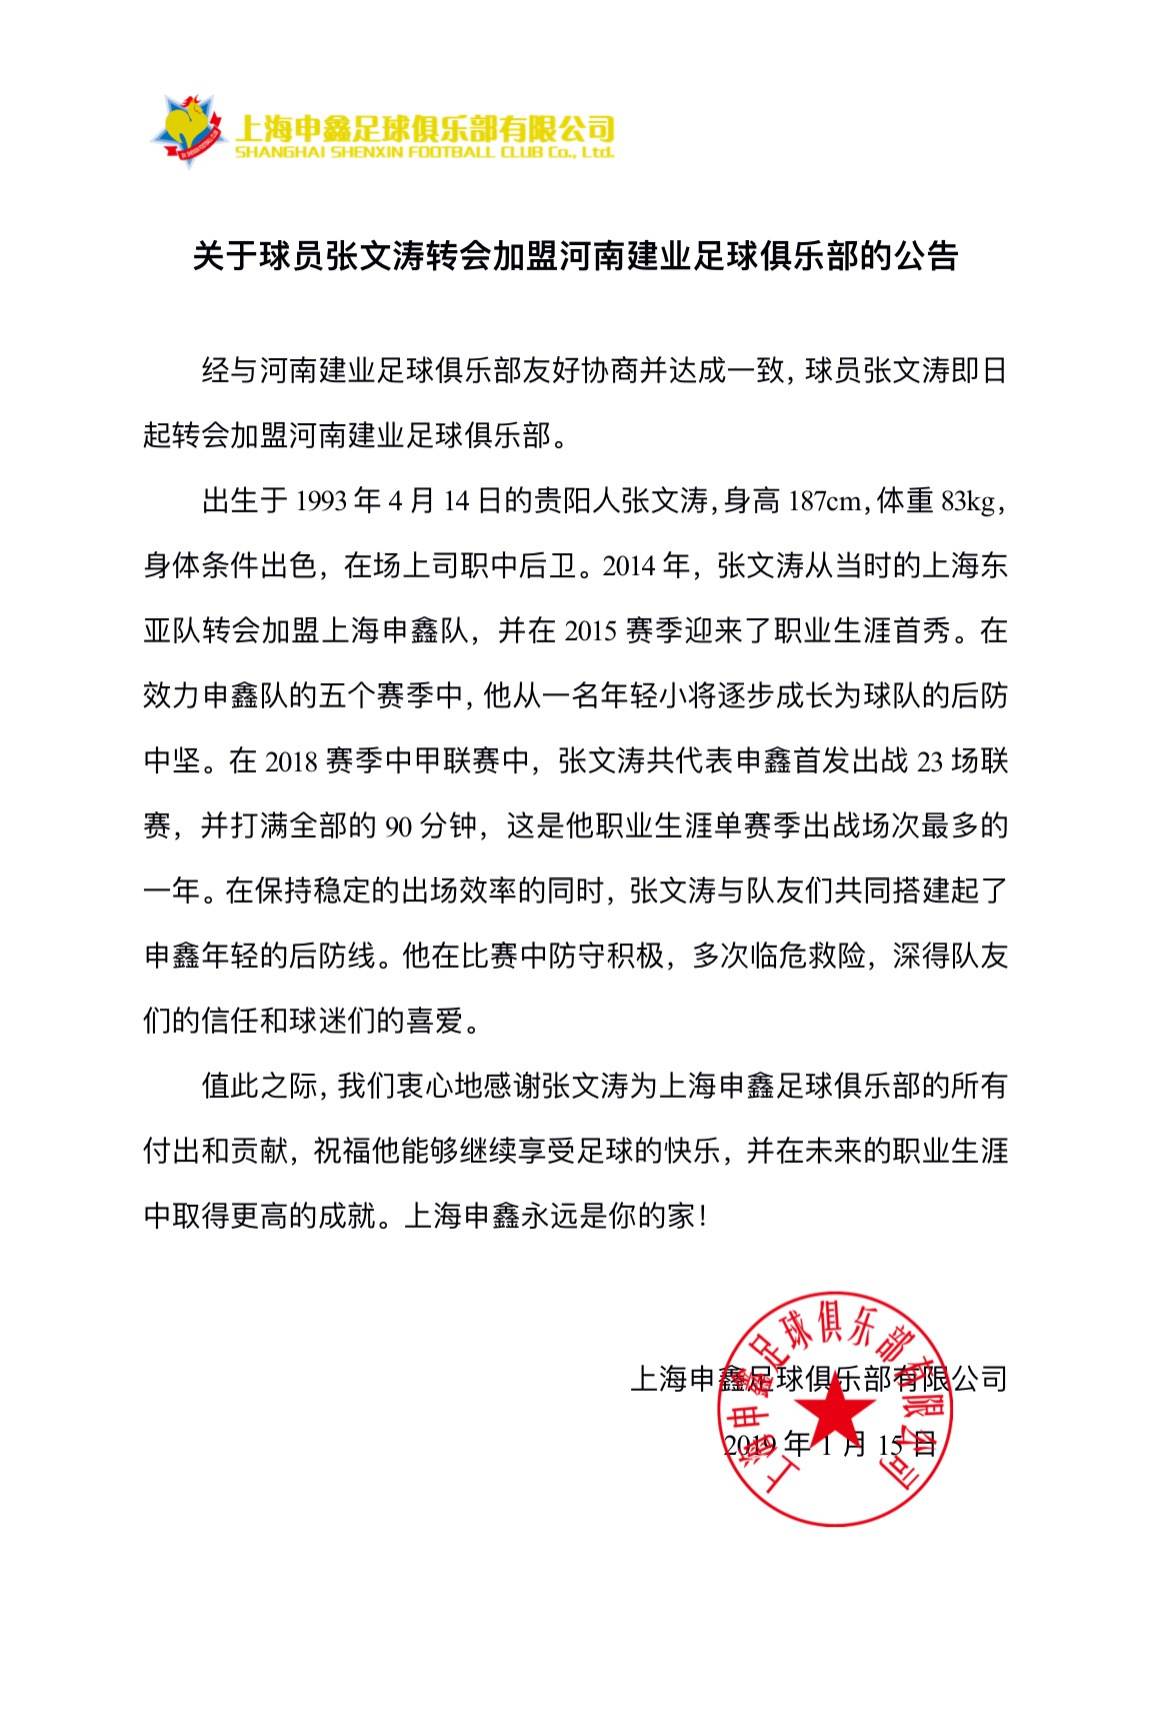 申鑫官宣张文涛加盟河南建业 祝愿获得更高成就_上海